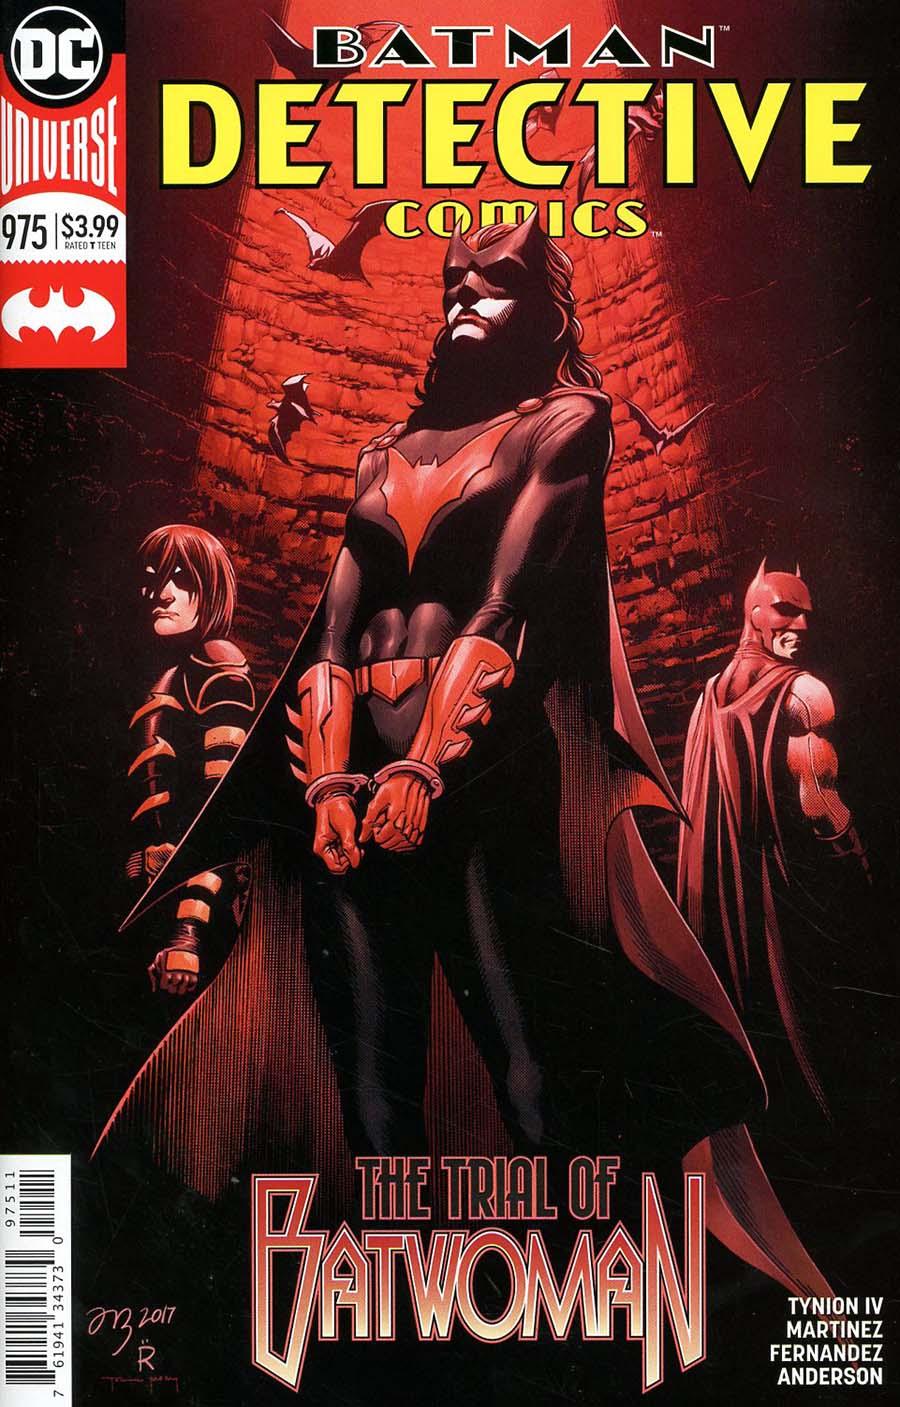 Detective Comics Vol. 2 #975